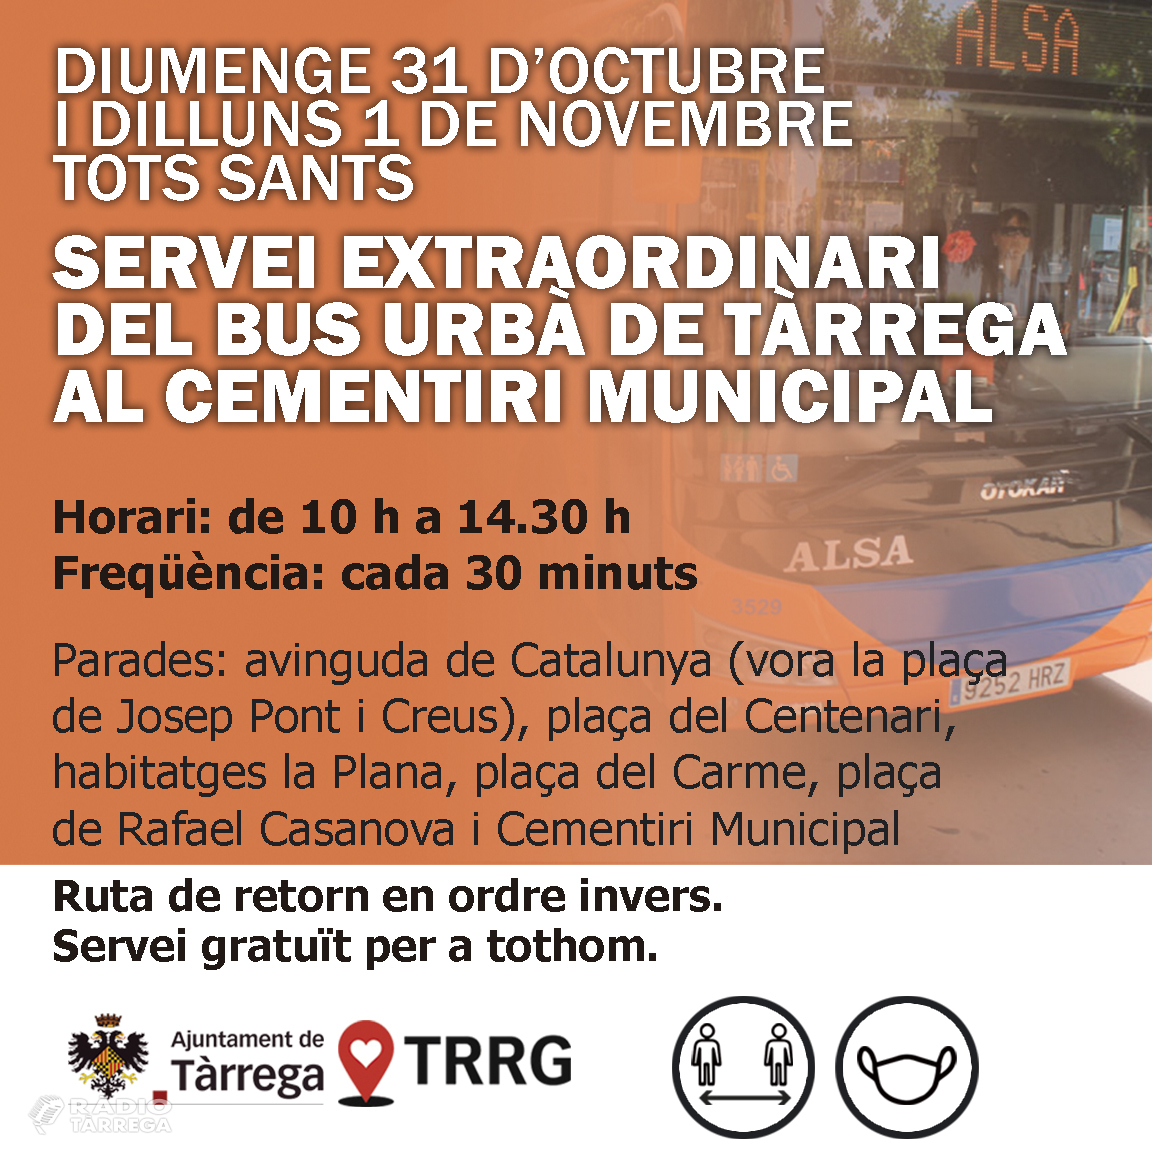 L'Ajuntament de Tàrrega habilitarà un servei extraordinari del bus urbà per Tots Sants el diumenge 31 d'octubre i el dilluns 1 per facilitar els desplaçaments al cementiri municipal